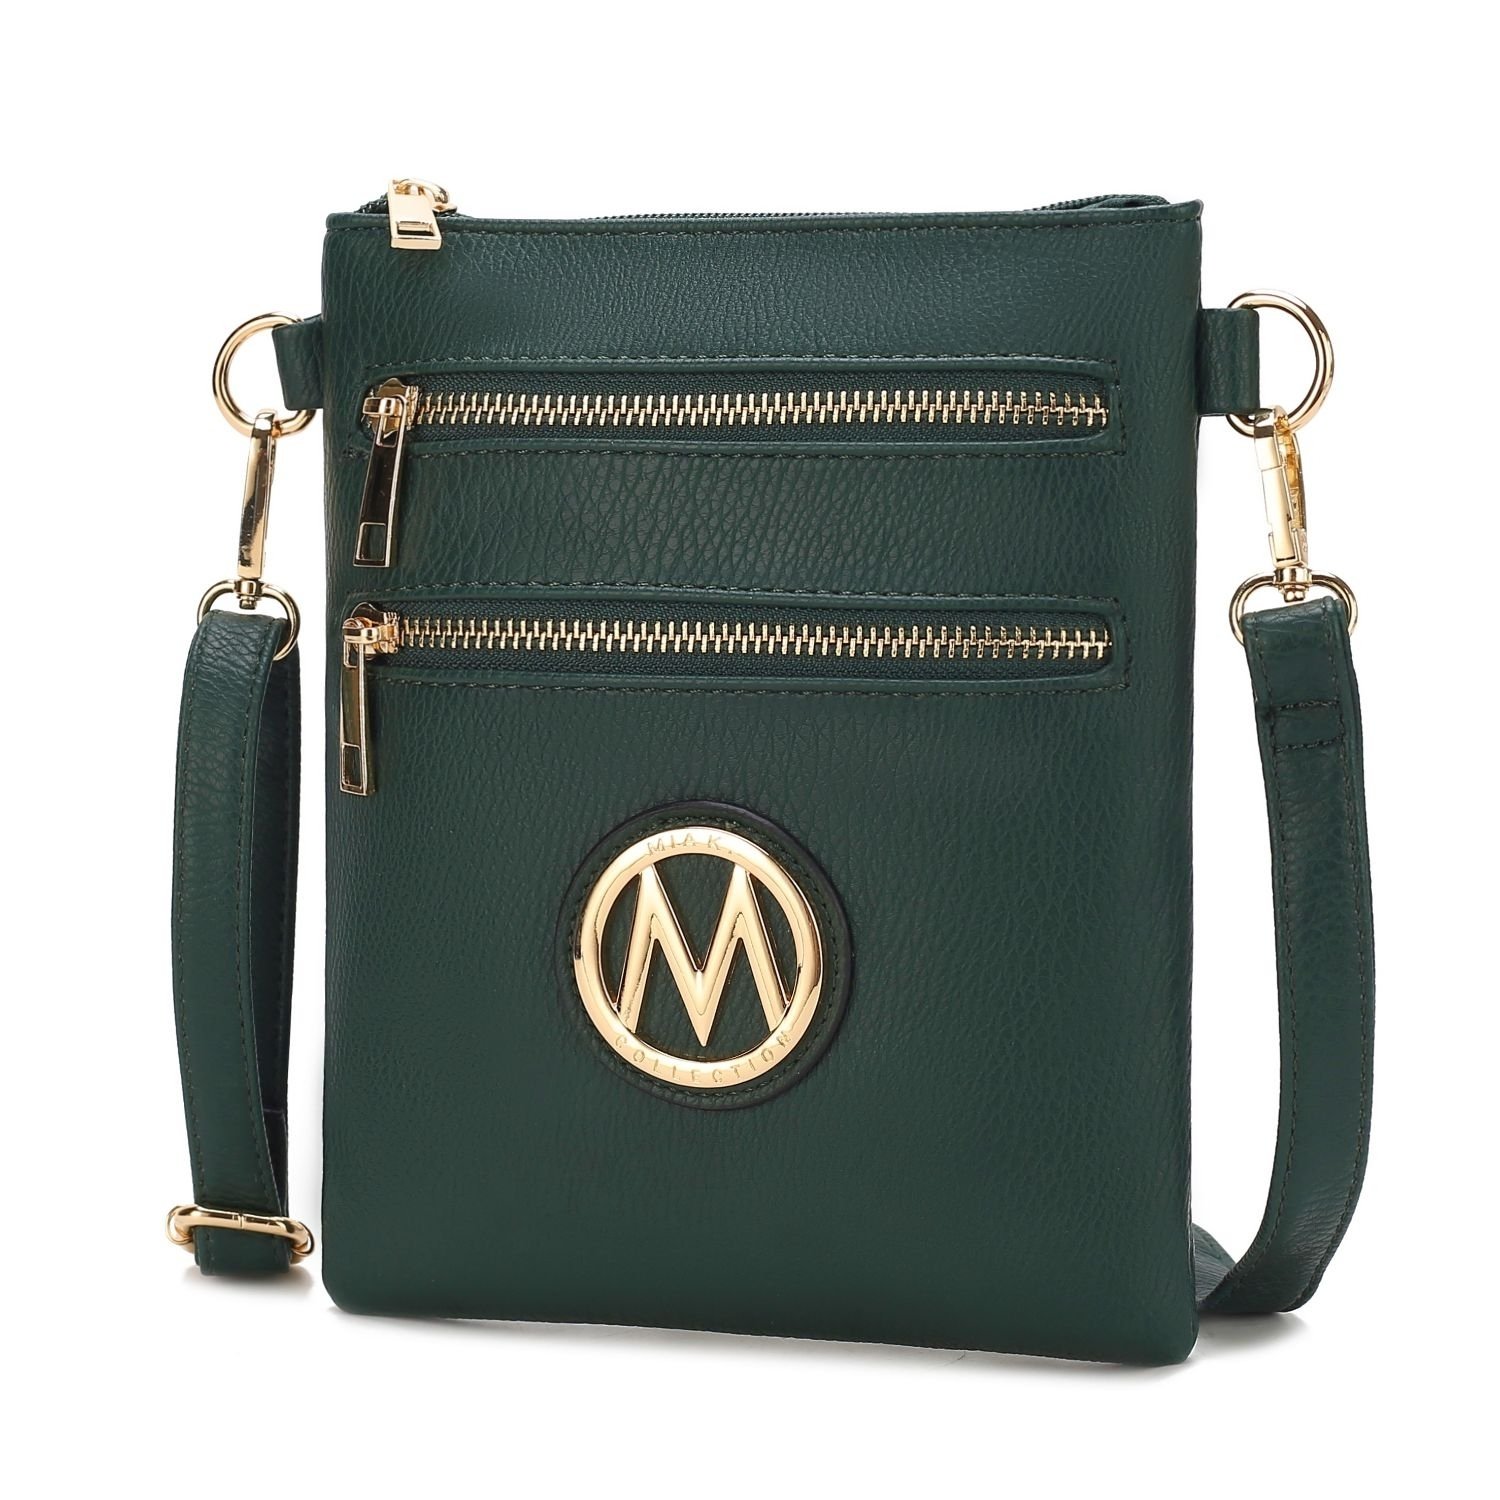 MKF Collection Medina Crossbody Handbag By Mia K. - Olive